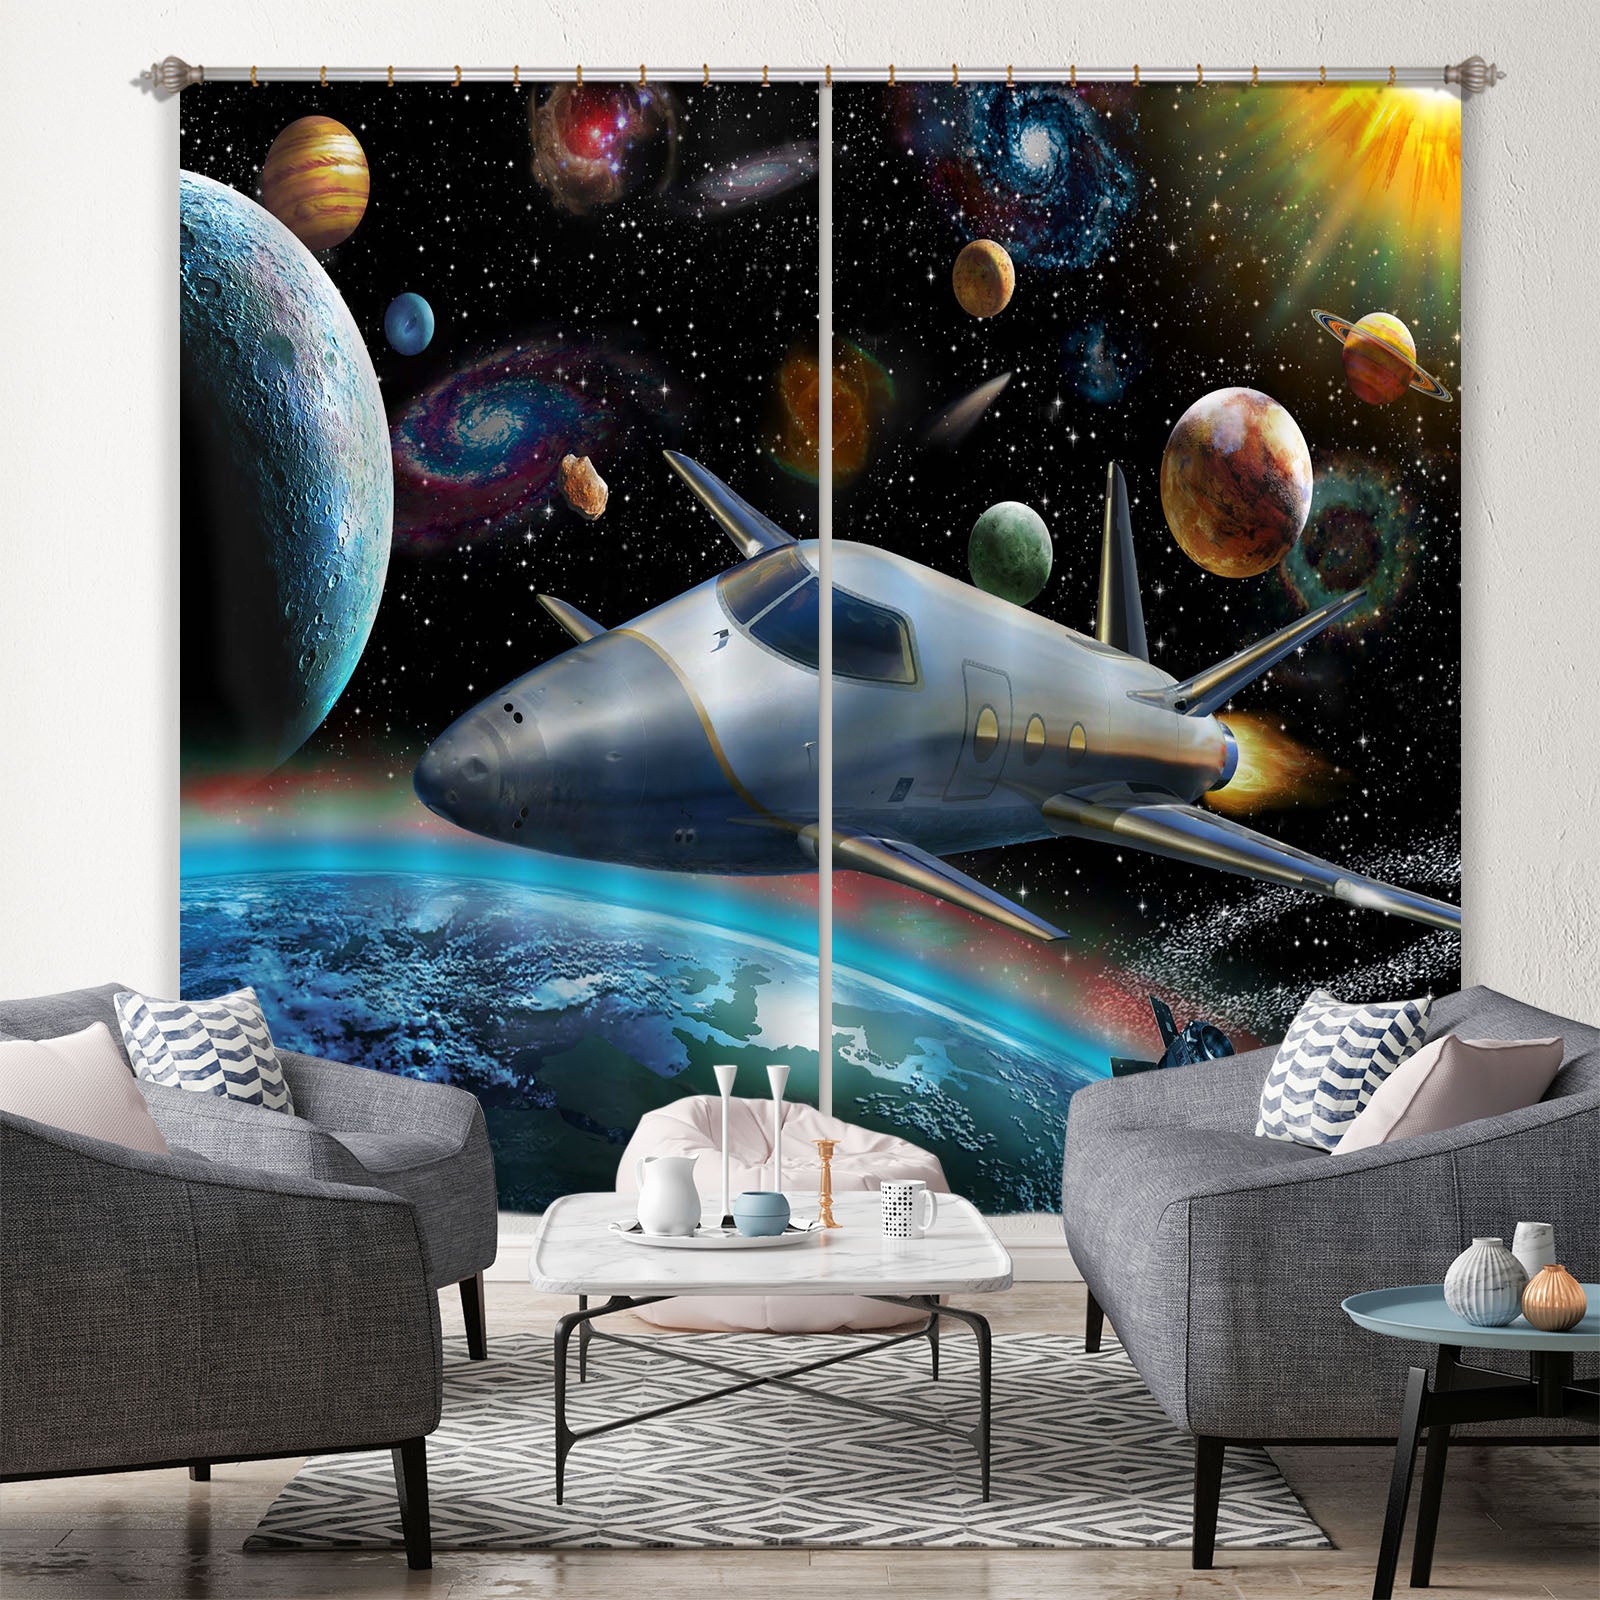 3D Planet Spaceship 060 Adrian Chesterman Curtain Curtains Drapes